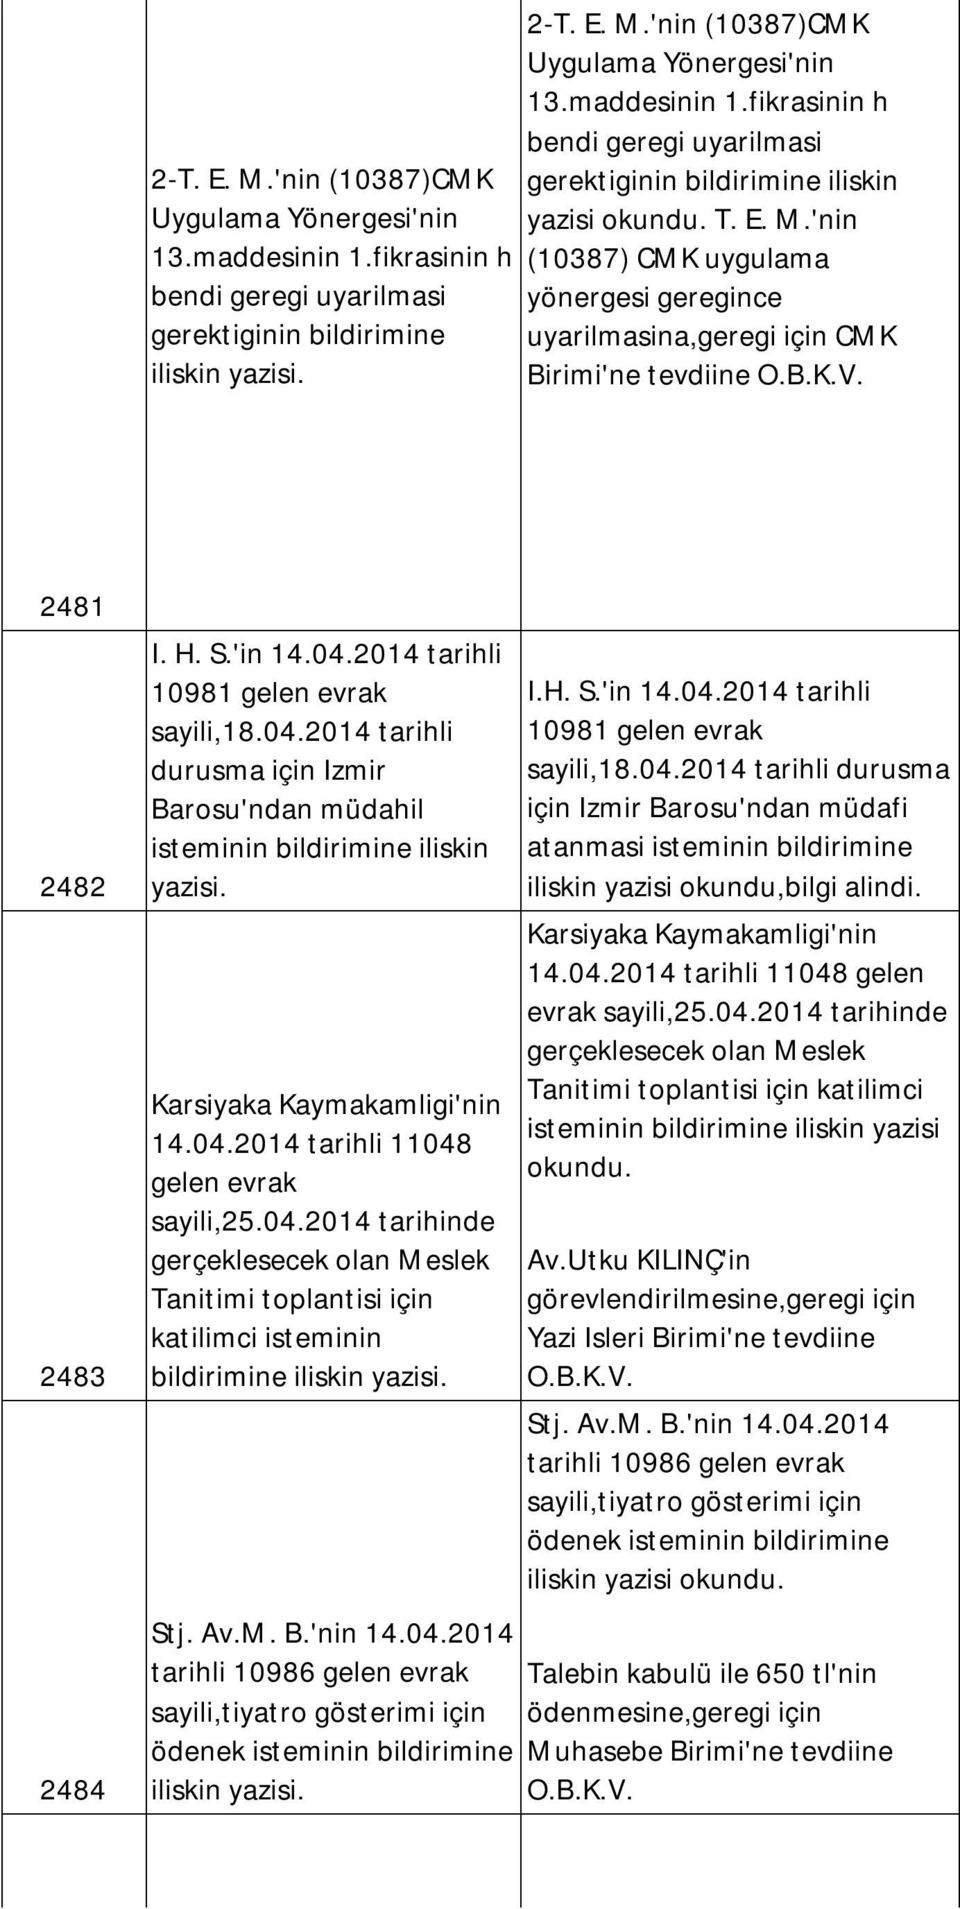 2014 tarihli 10981 gelen evrak sayili,18.04.2014 tarihli durusma için Izmir Barosu'ndan müdahil isteminin bildirimine iliskin yazisi. Karsiyaka Kaymakamligi'nin 14.04.2014 tarihli 11048 gelen evrak sayili,25.